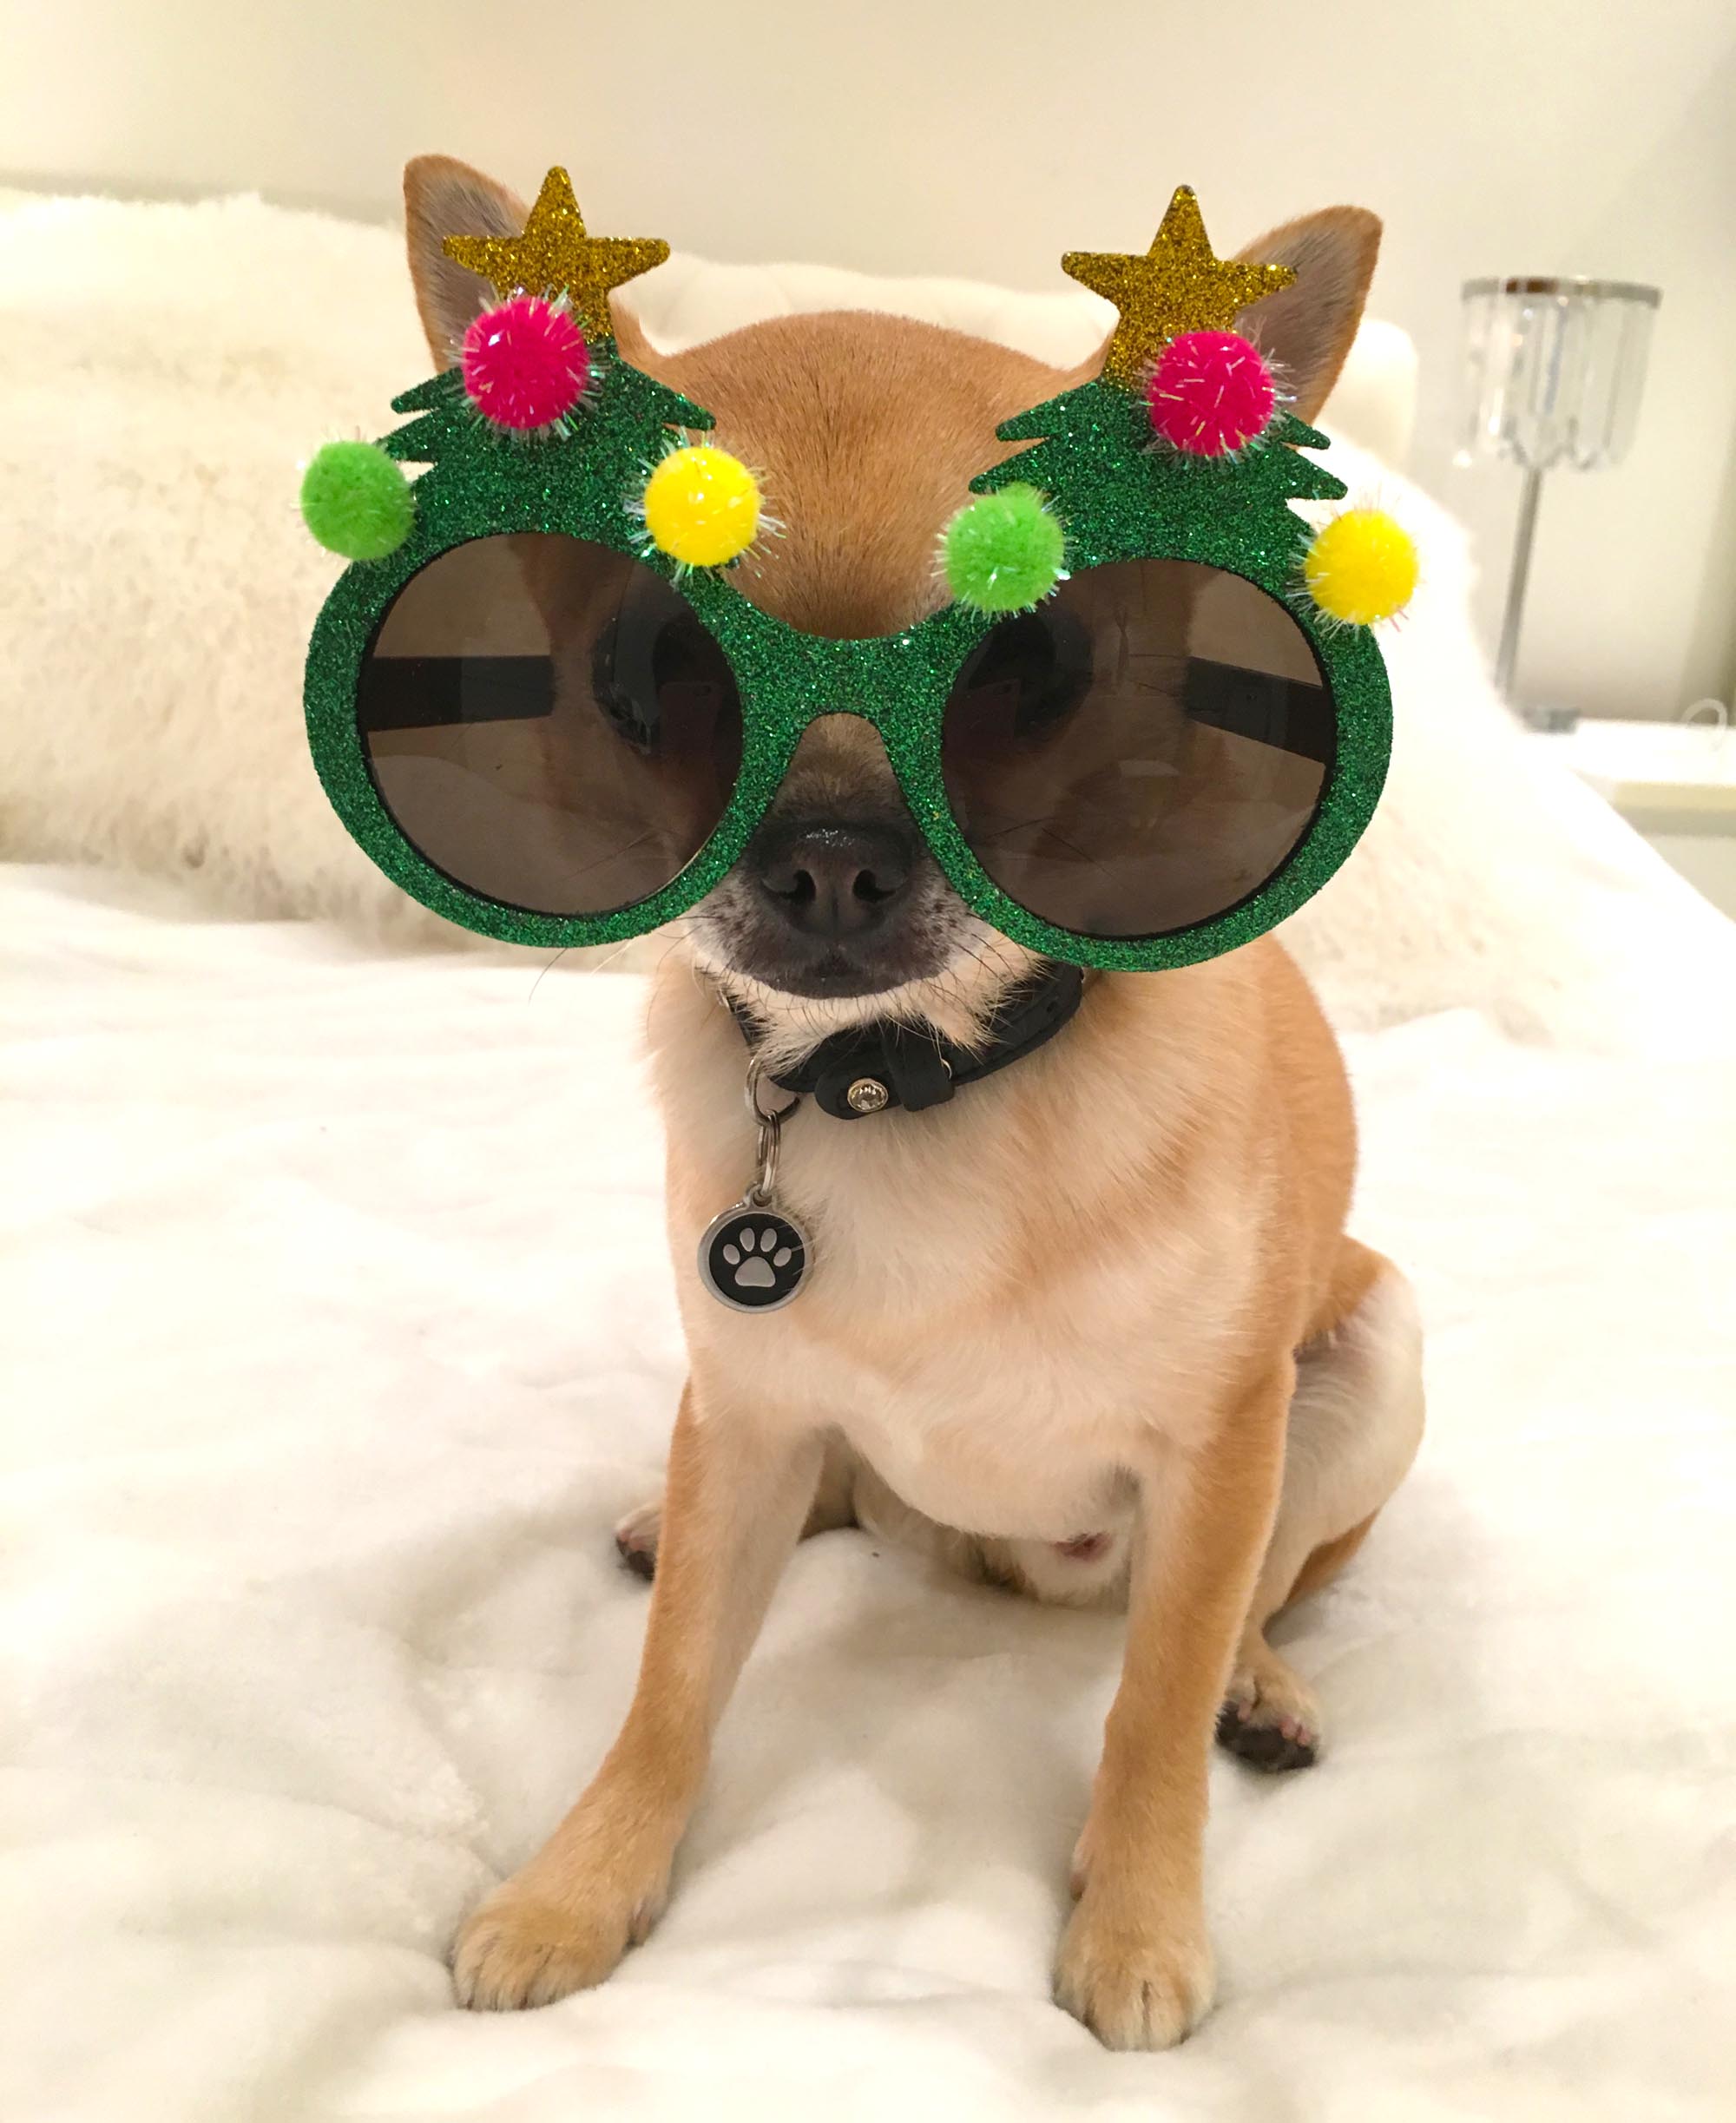 A Chihuahua-tastic Christmas!